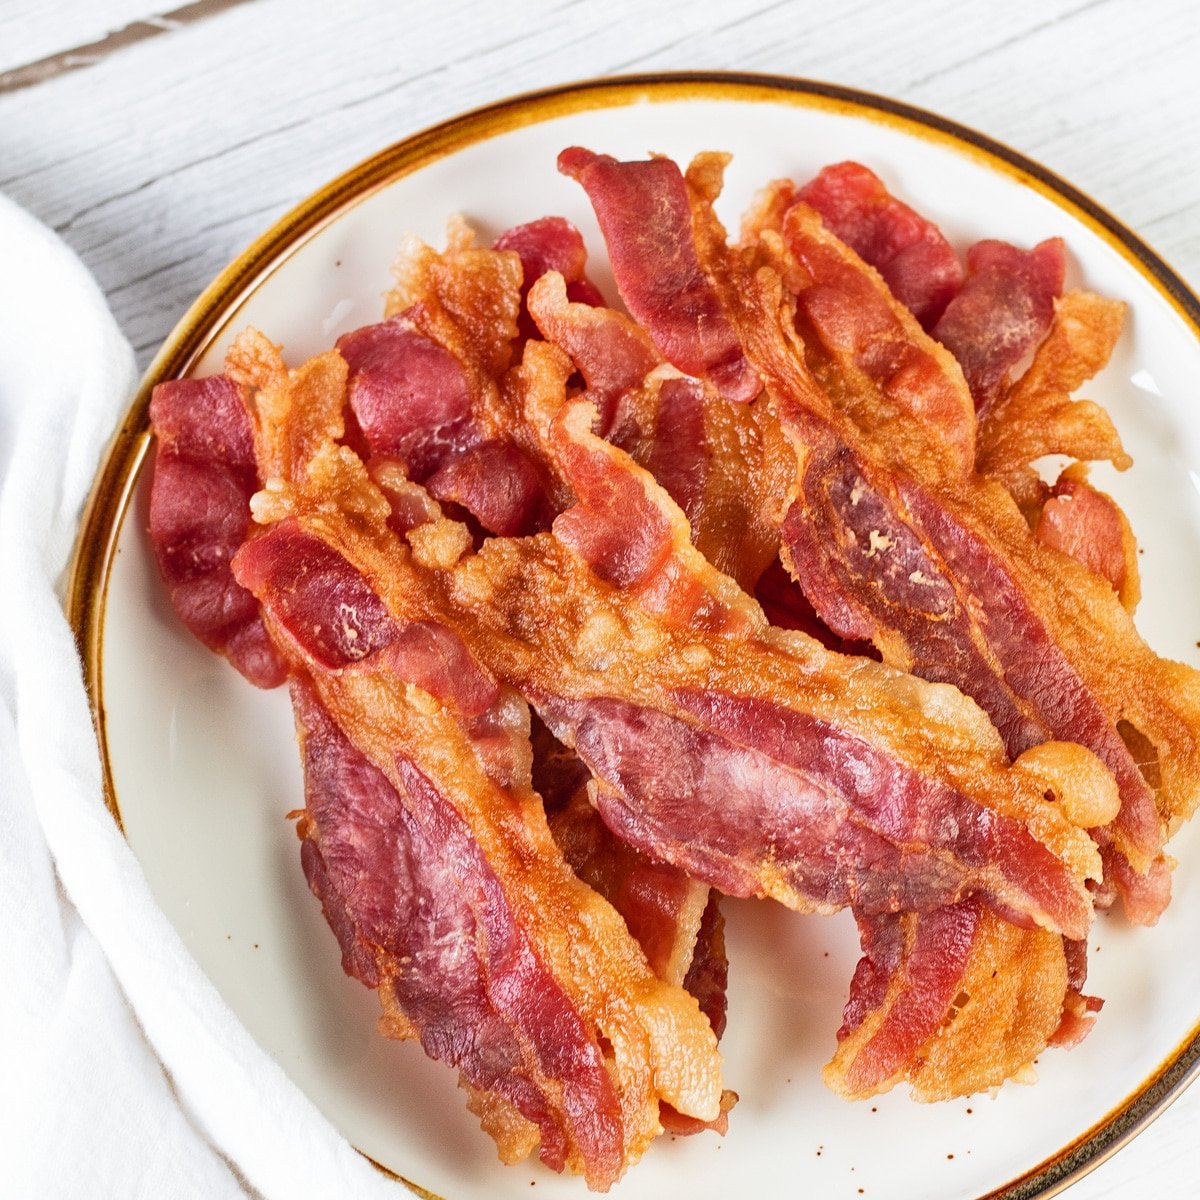 Bacon de micro-ondas servido em prato de borda marrom, cerca de 8 fatias empilhadas depois de crocantes com perfeição.